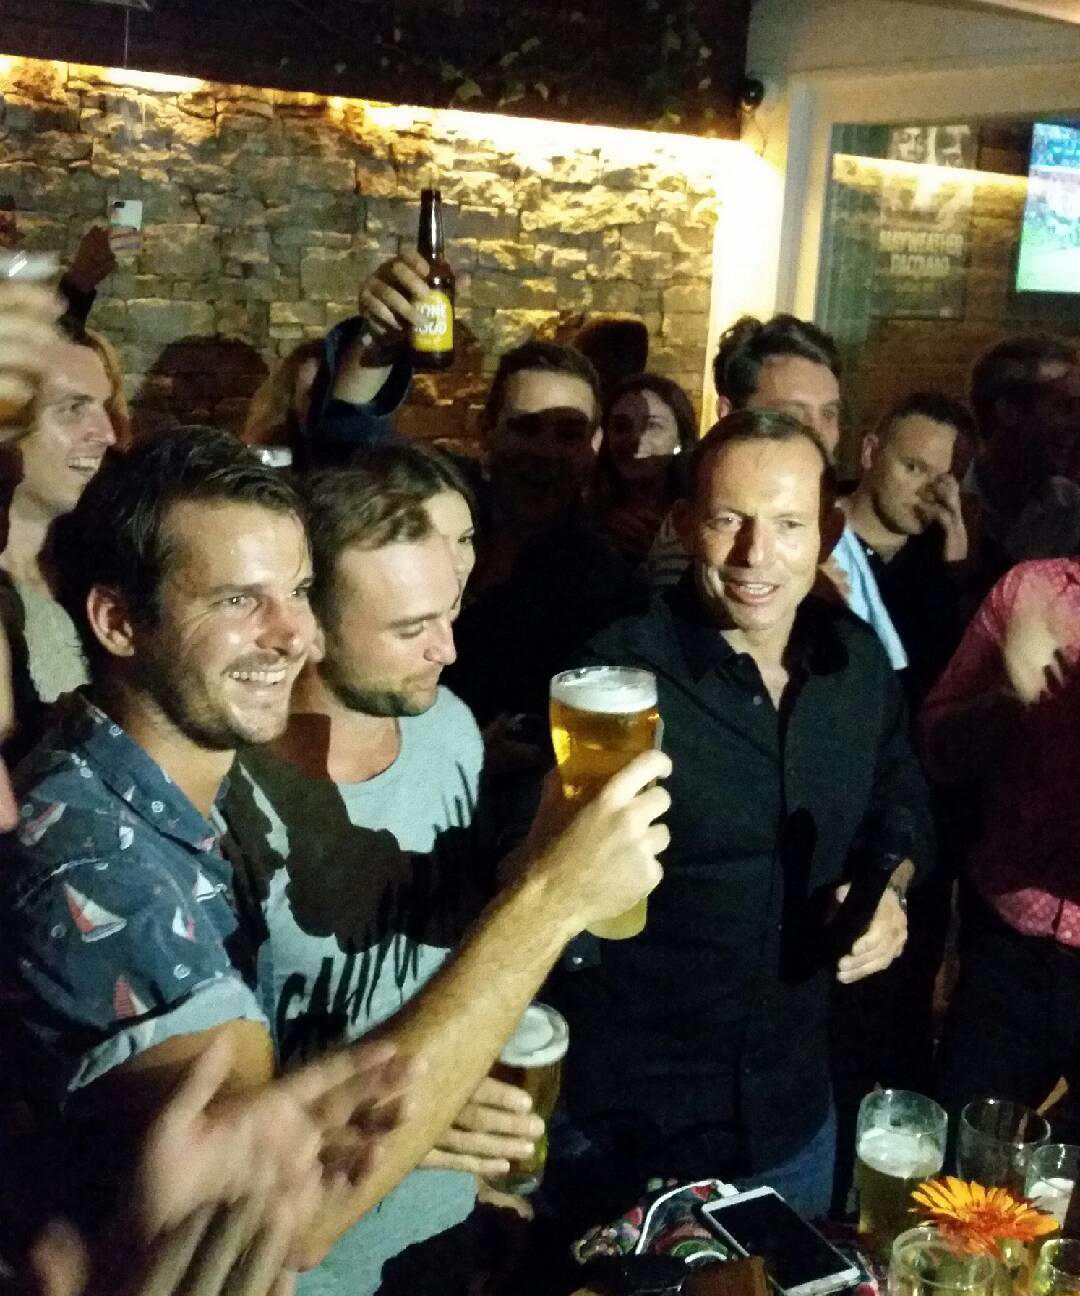 Tony Abbott skolls a beer at Sydney pub